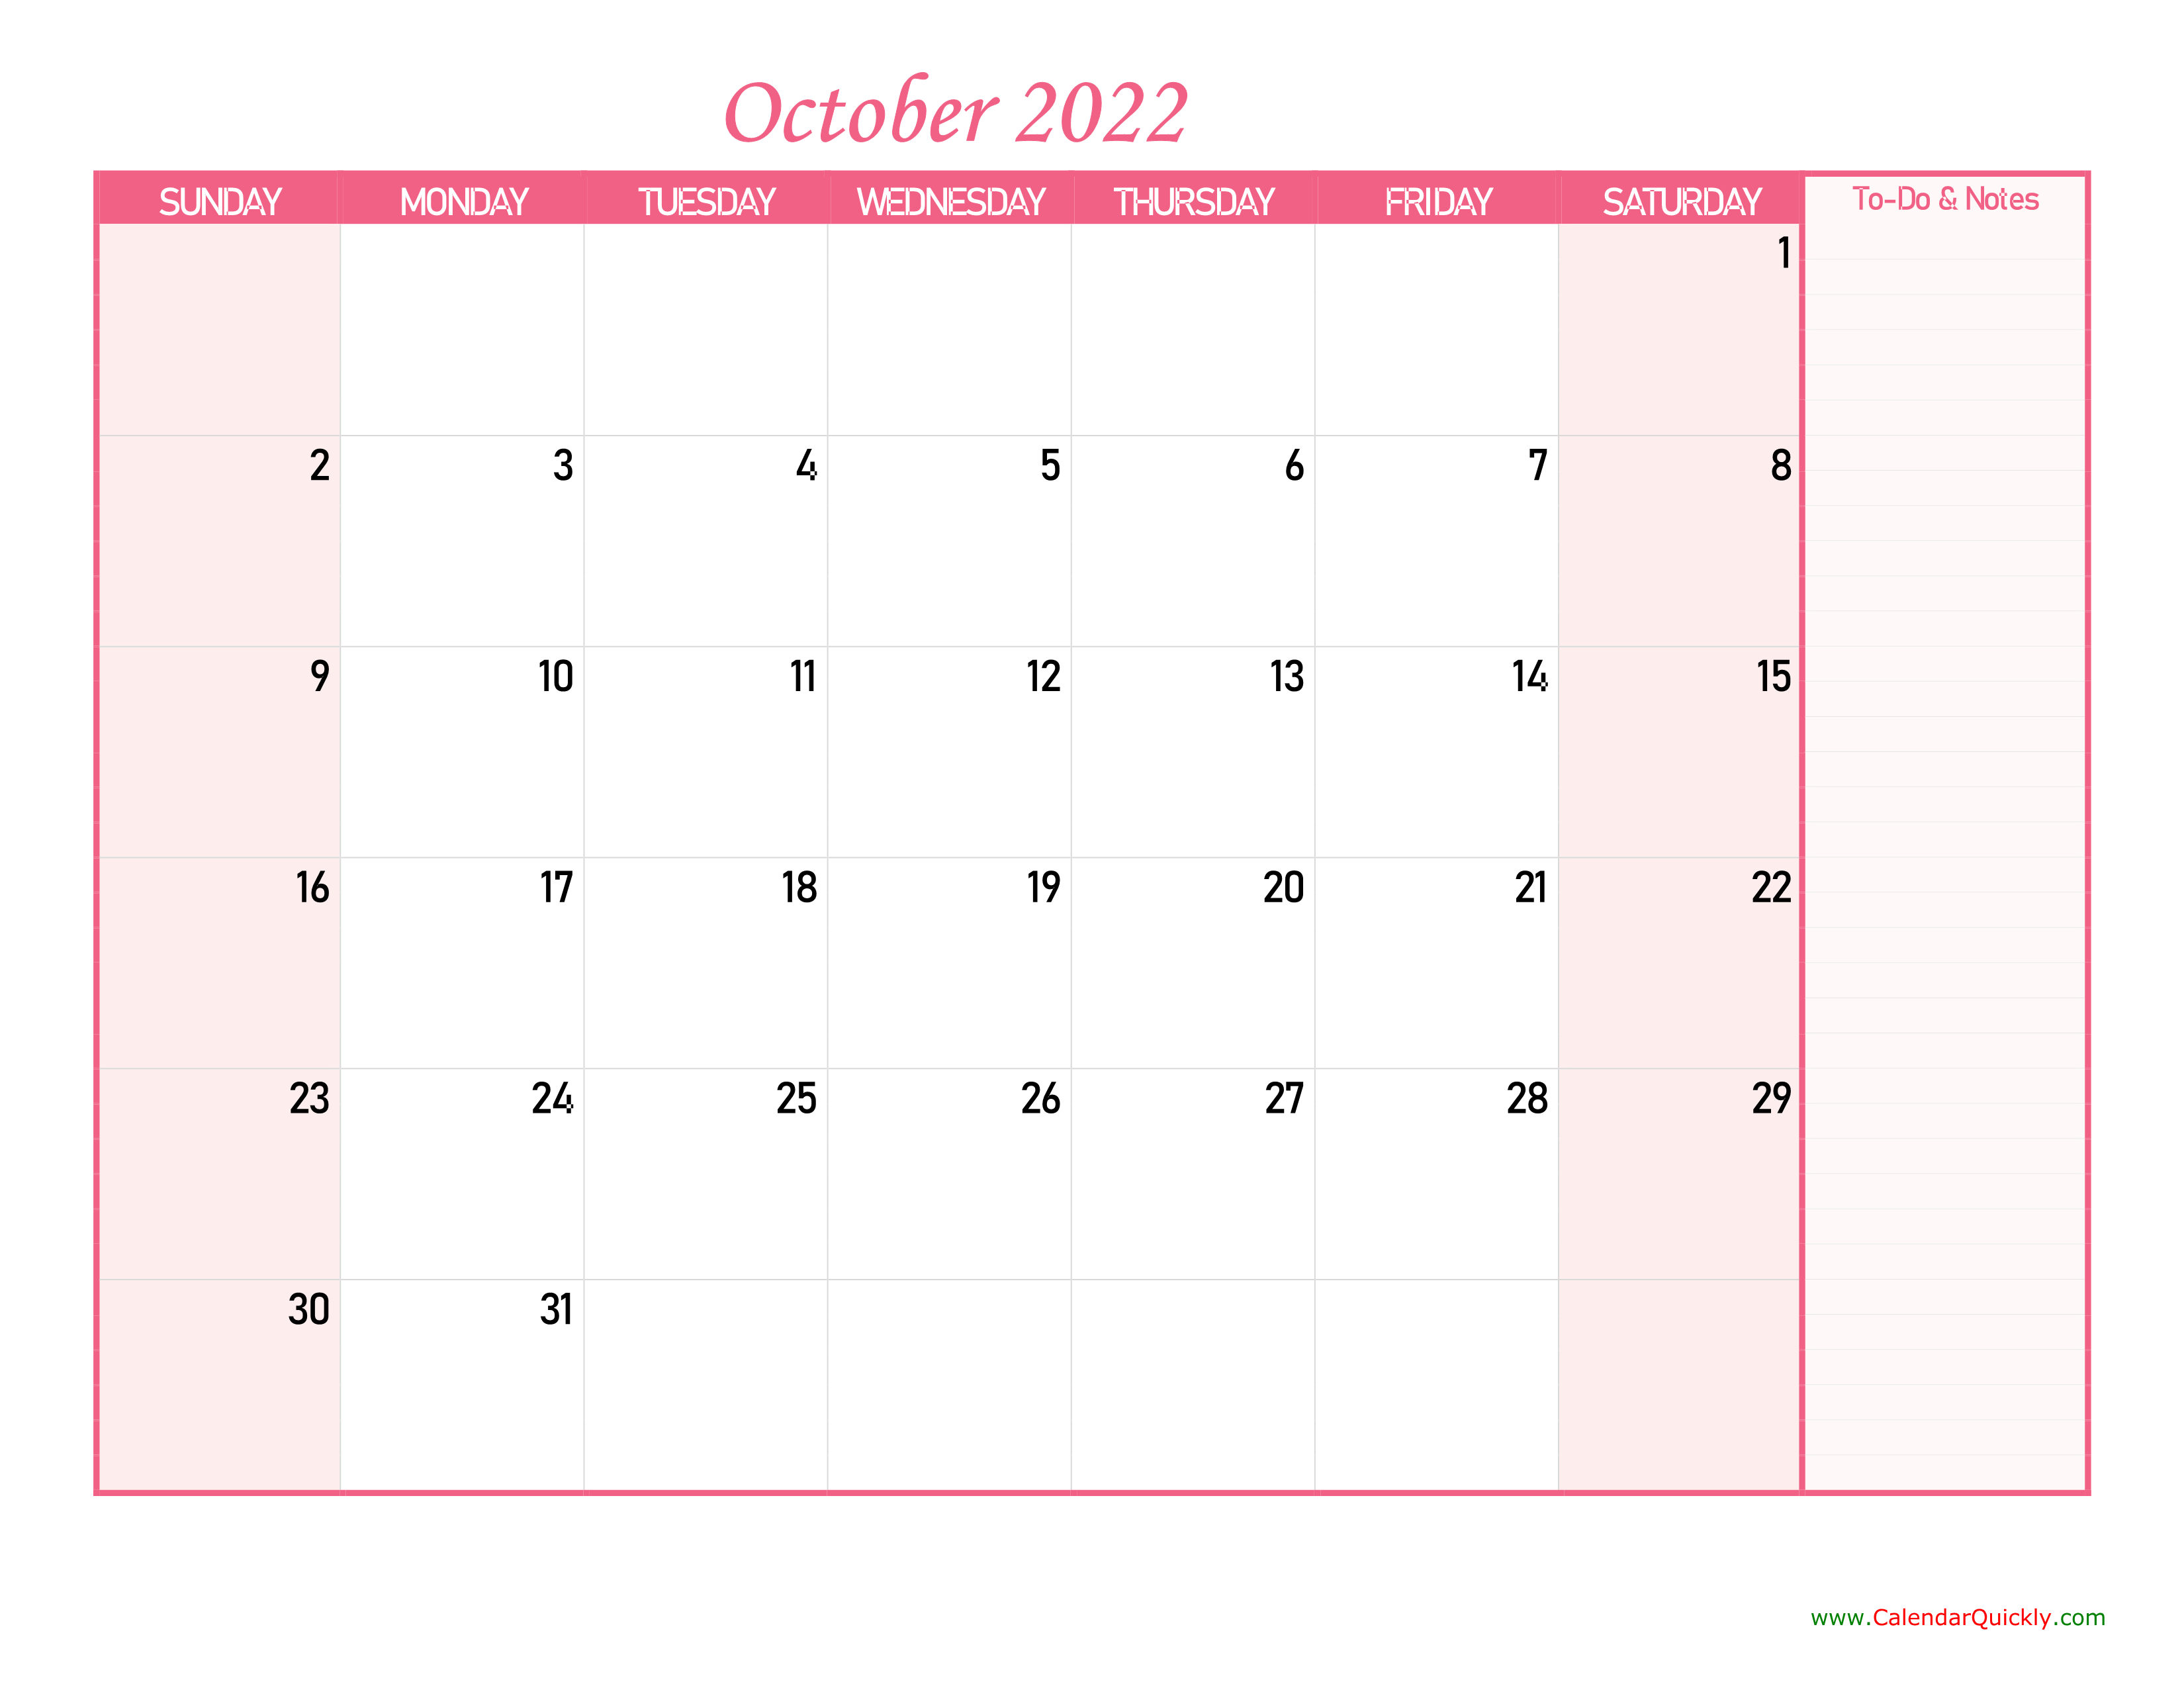 october calendar 2022 with notes calendar quickly